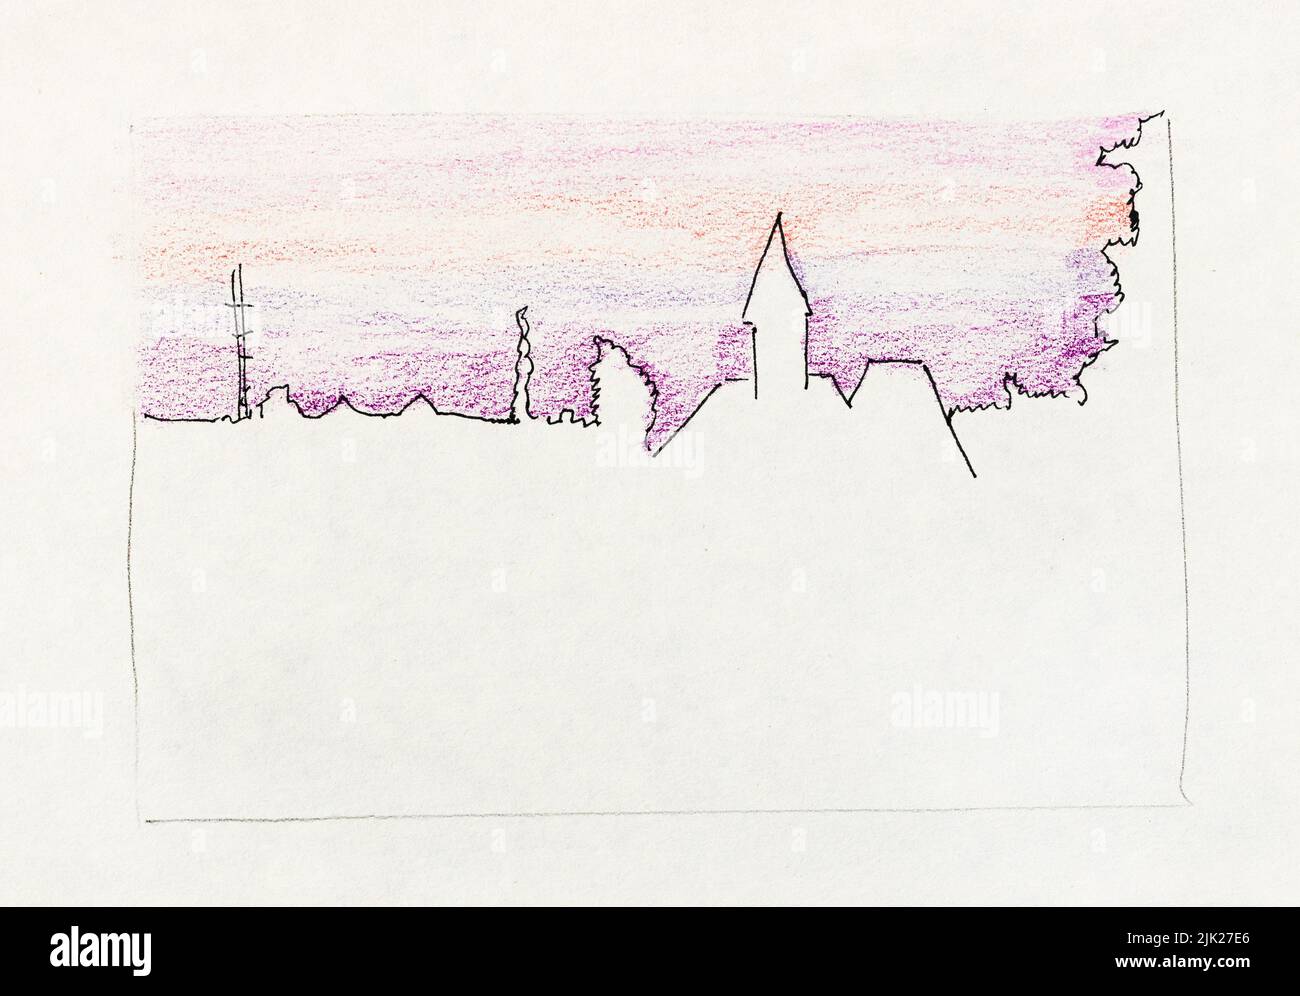 Bosquejo del horizonte de la ciudad de Gatchina Rusia con el Palacio Priory bajo el cielo de la puesta de sol púrpura dibujado a mano con pluma negra y lápices de color sobre blanco viejo Foto de stock